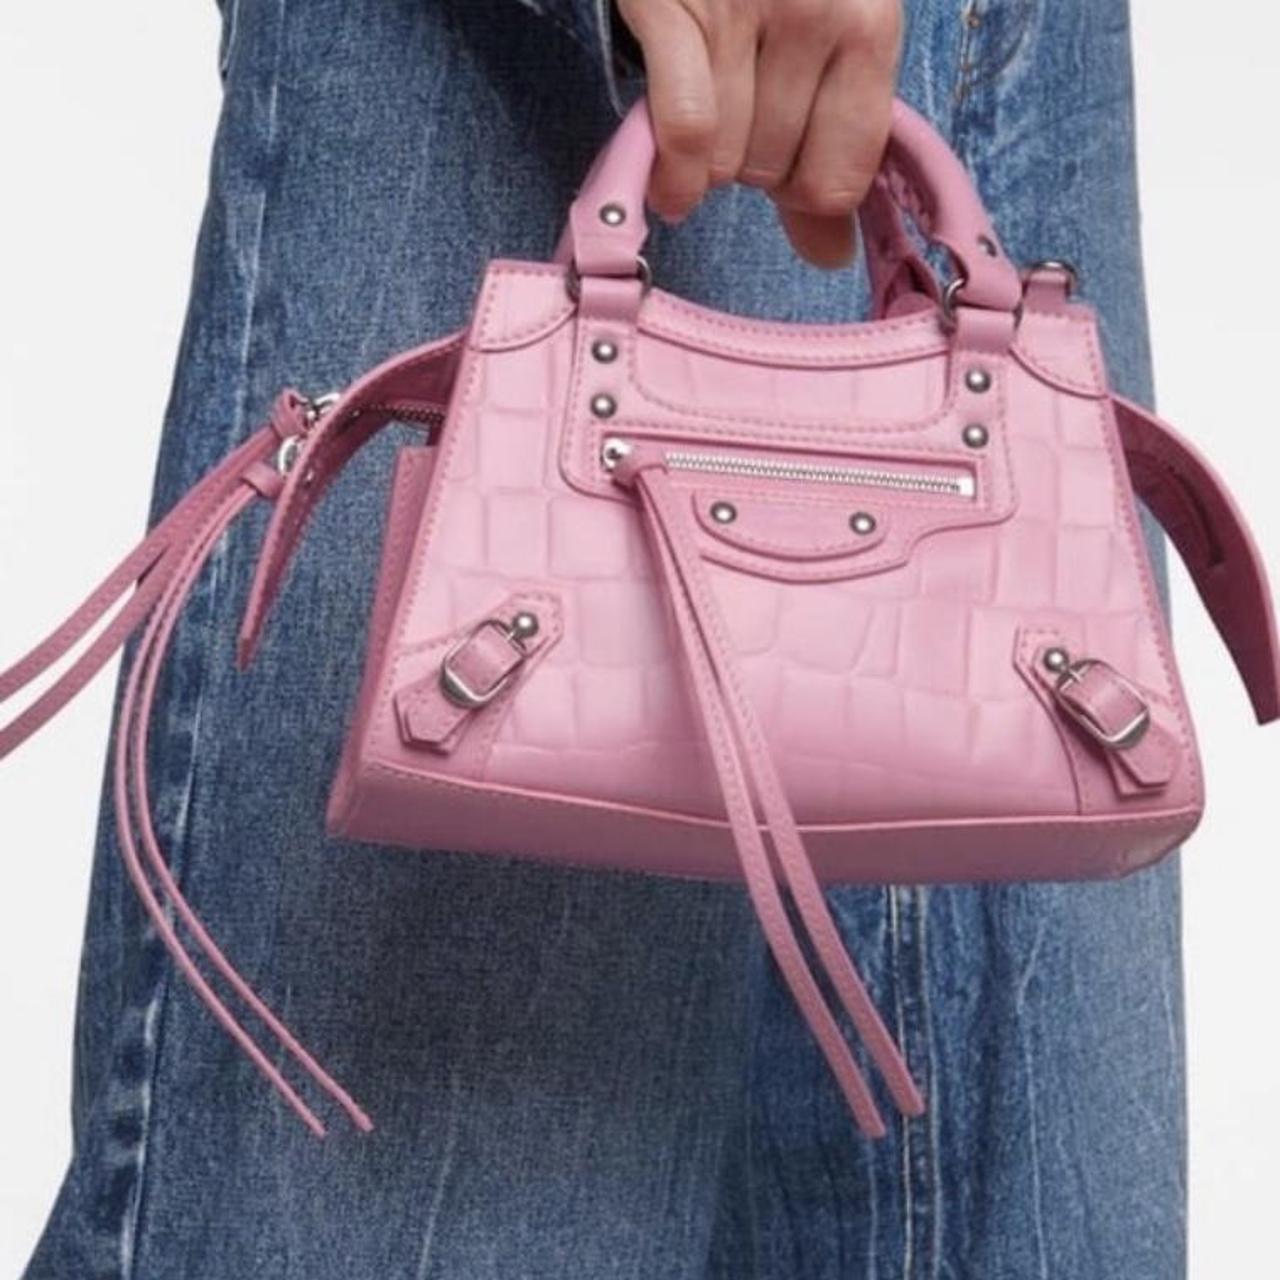 Balenciaga Neo Classic Mini Top Handle Bag in Pink